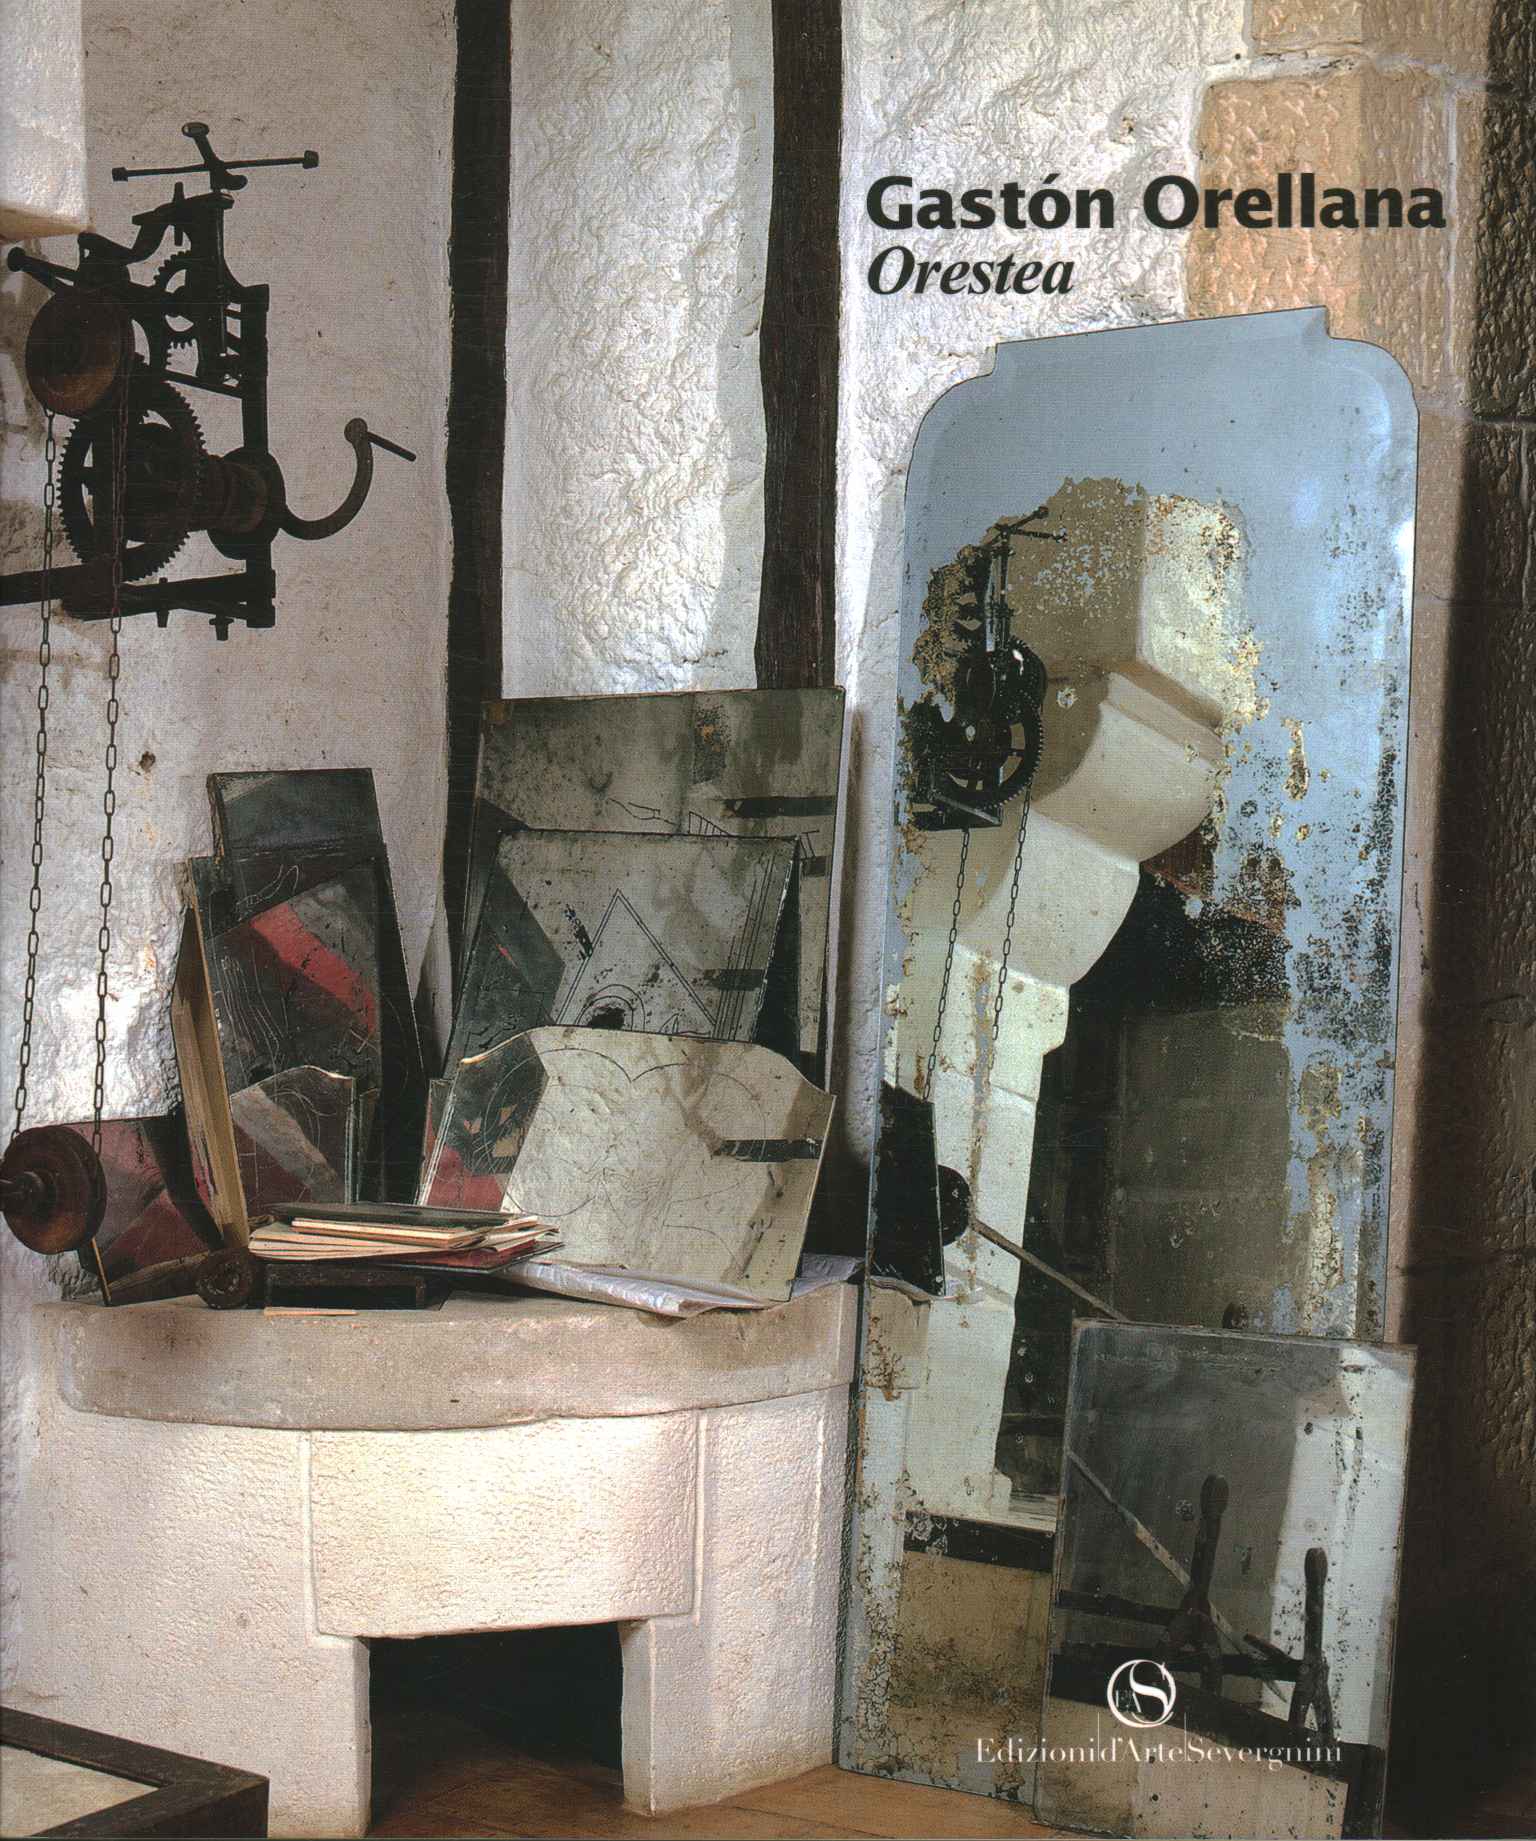 Gaston Orellana